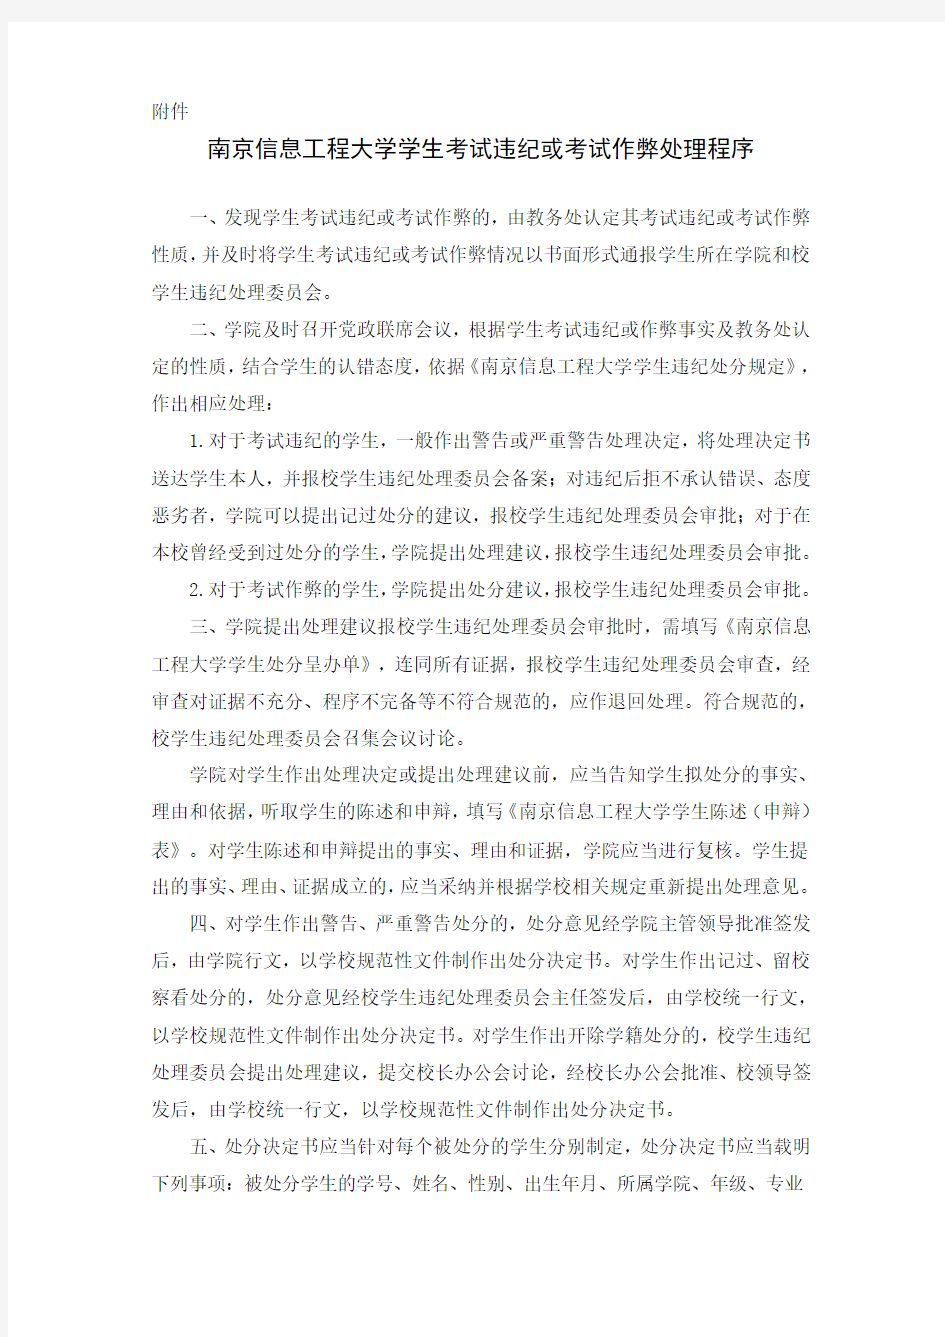 南京信息工程大学学生考试违纪或考试作弊处理程序